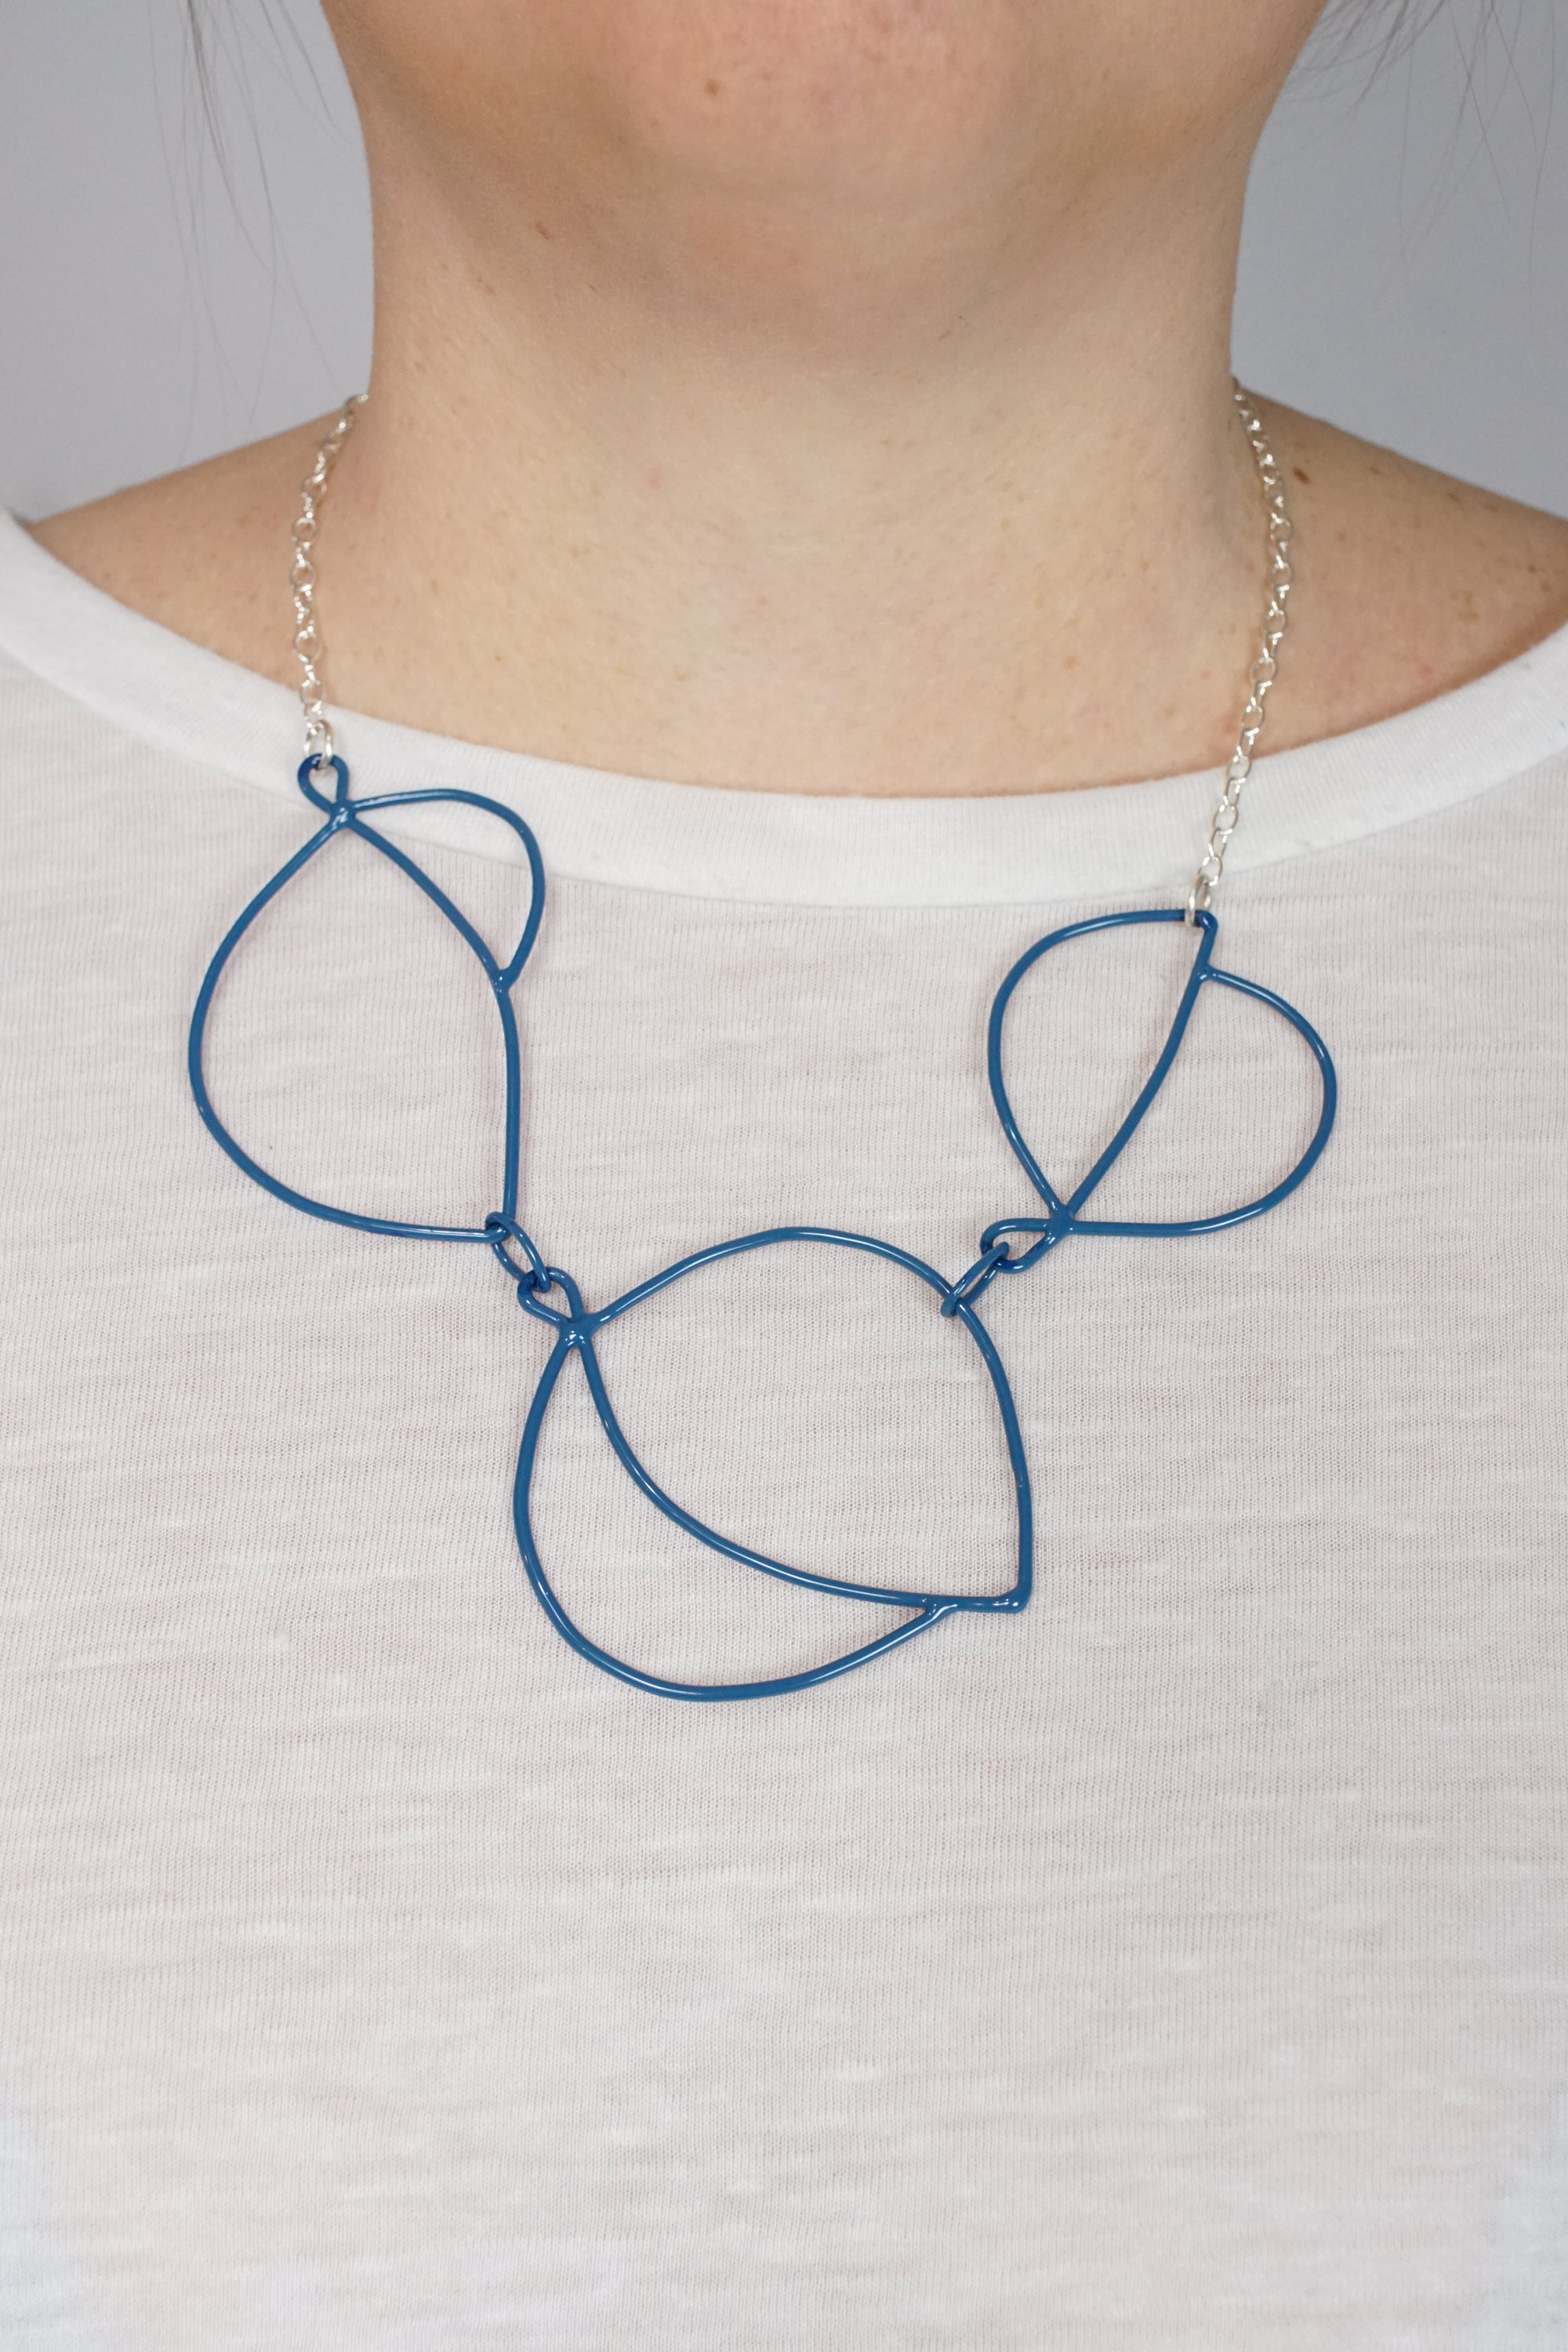 Embiller Necklace in Azure Blue